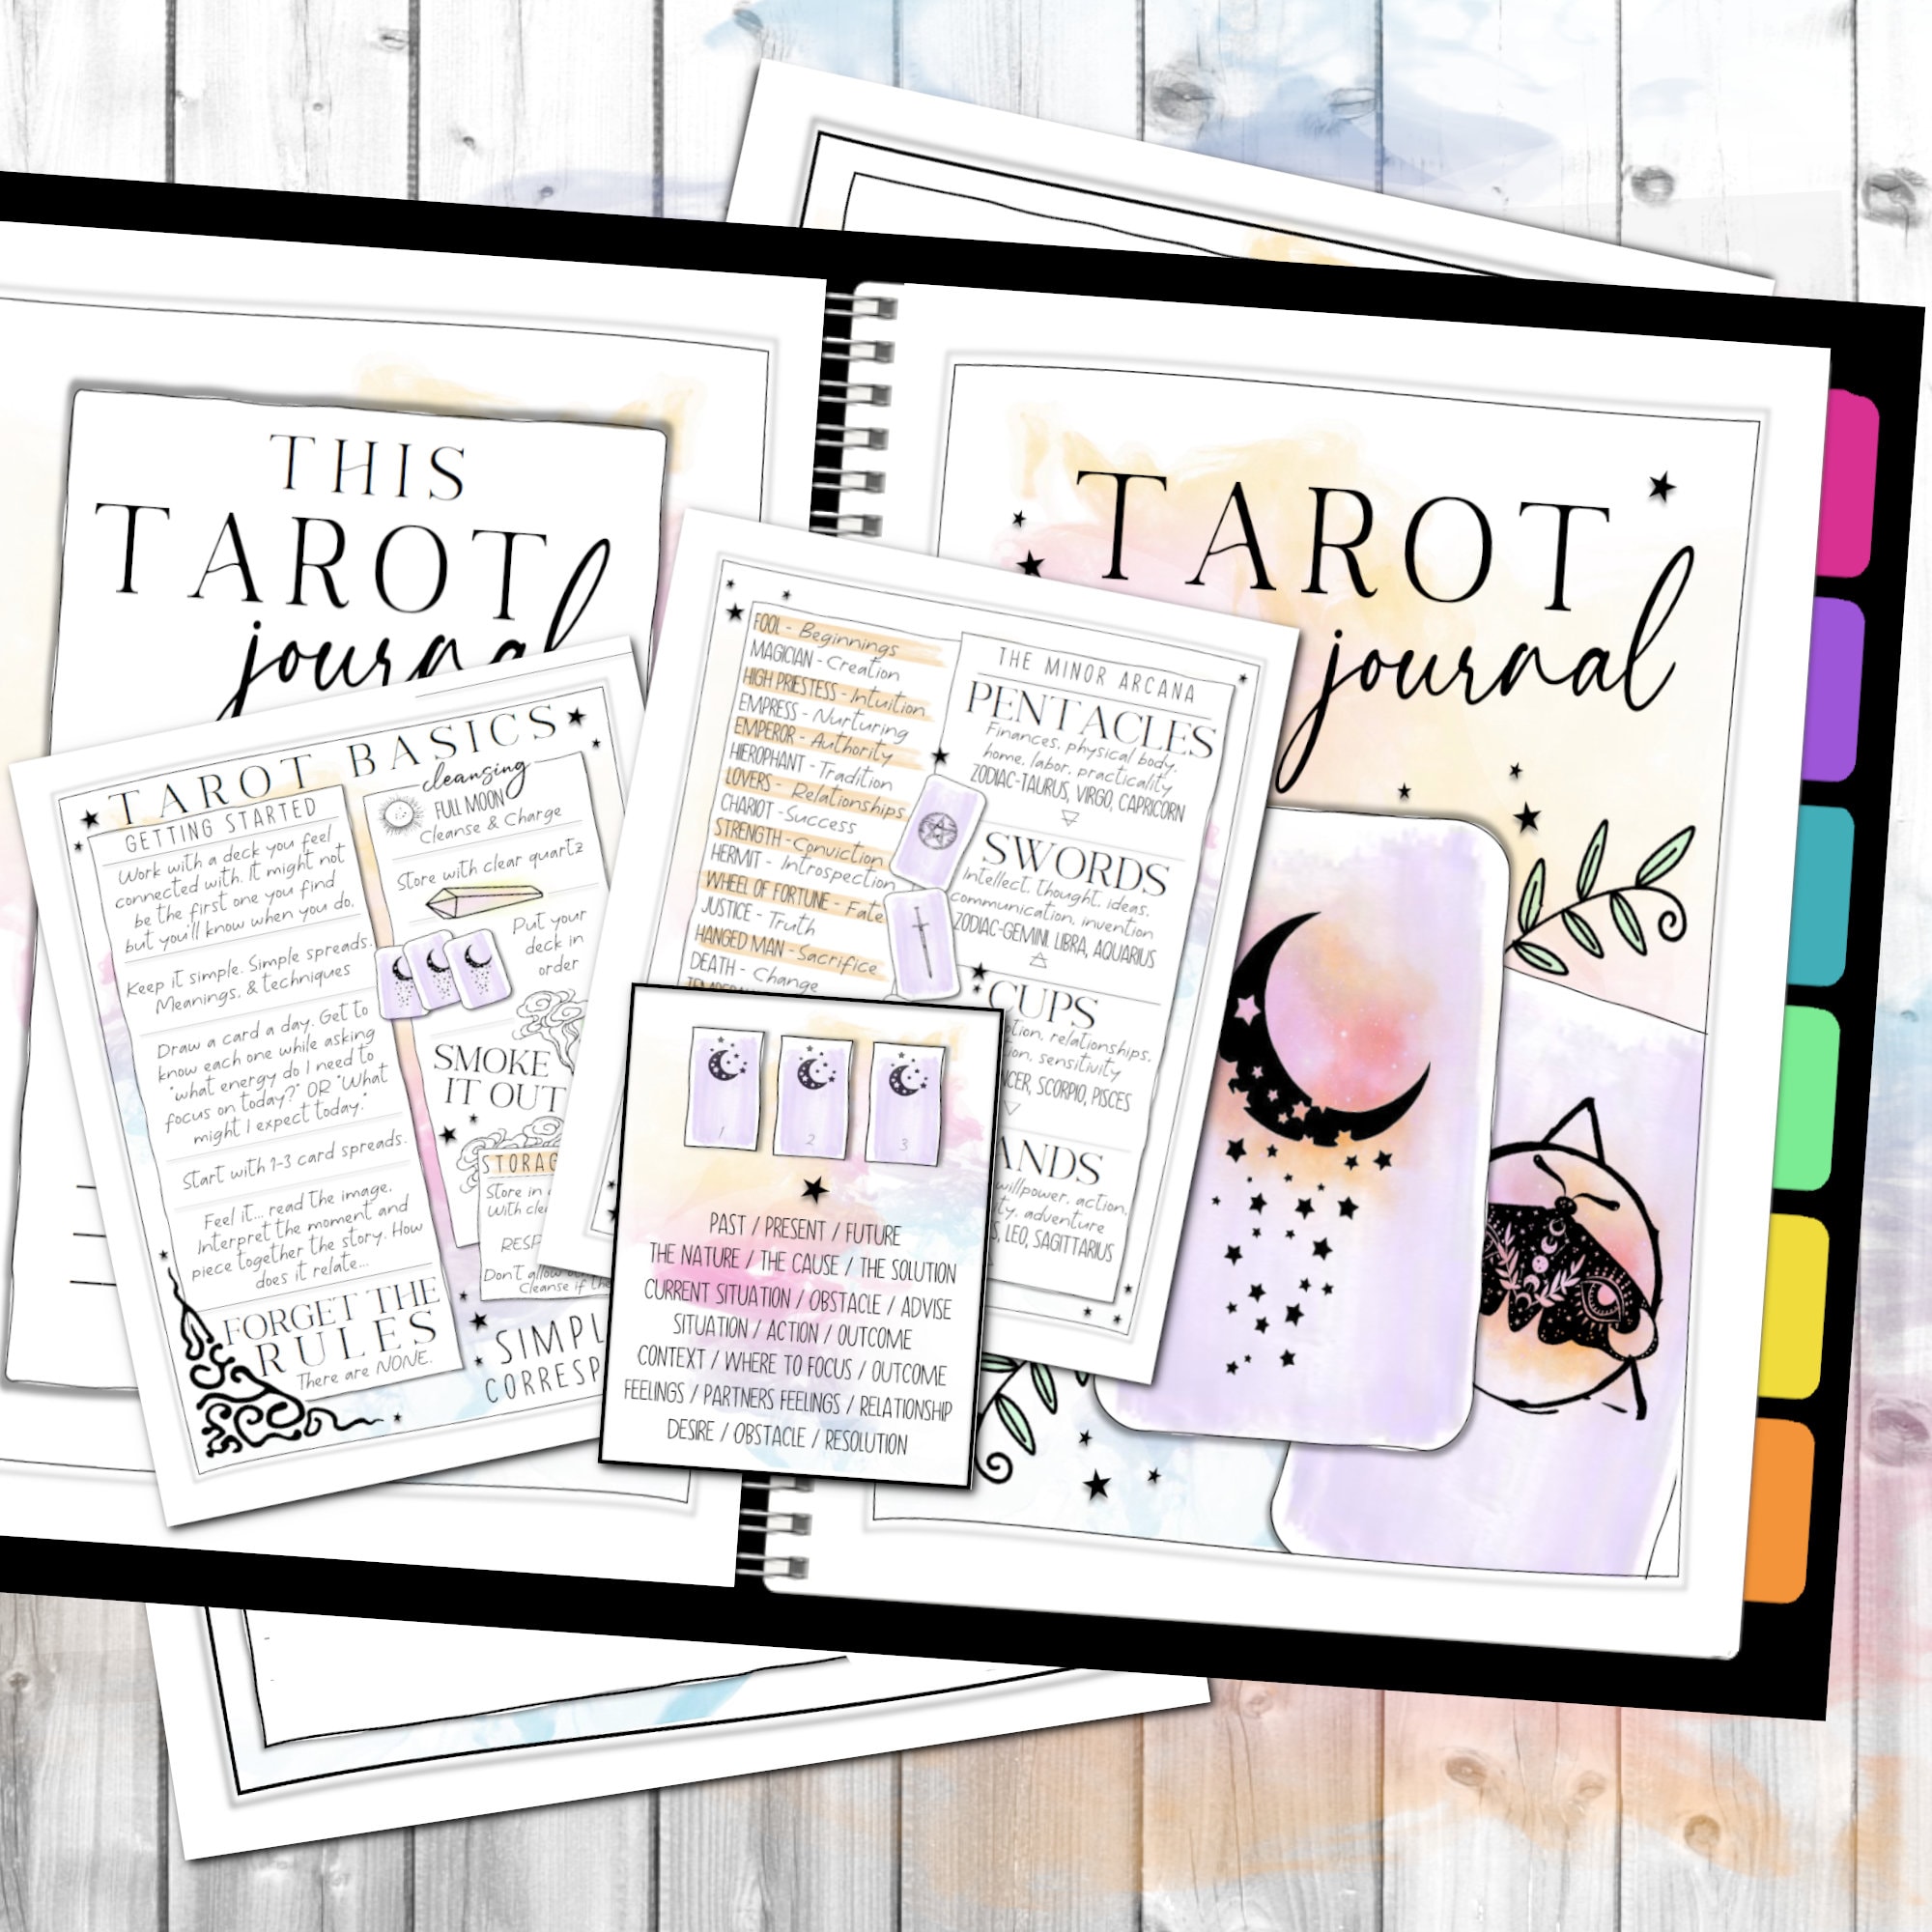 TAROT JOURNAL Tarot Stickers Tarot Planner Tarot Card Tracker 150